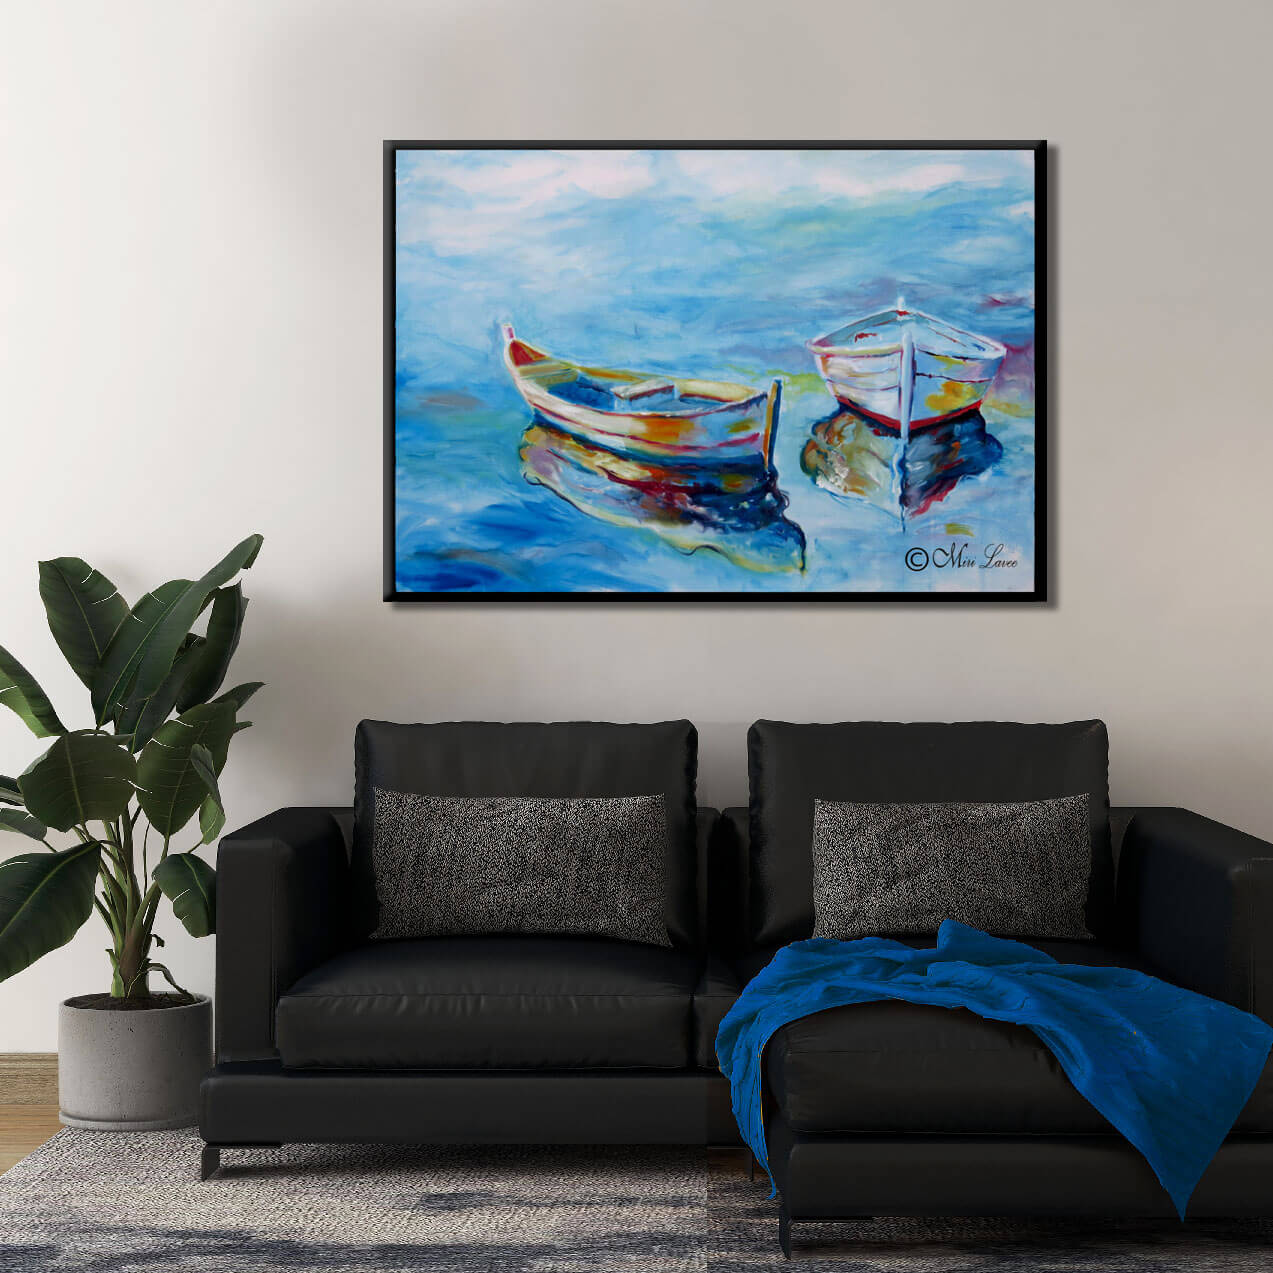 ציור של סירות וים כחול בסלון עם ספה שחורה ציירת מירי לביא